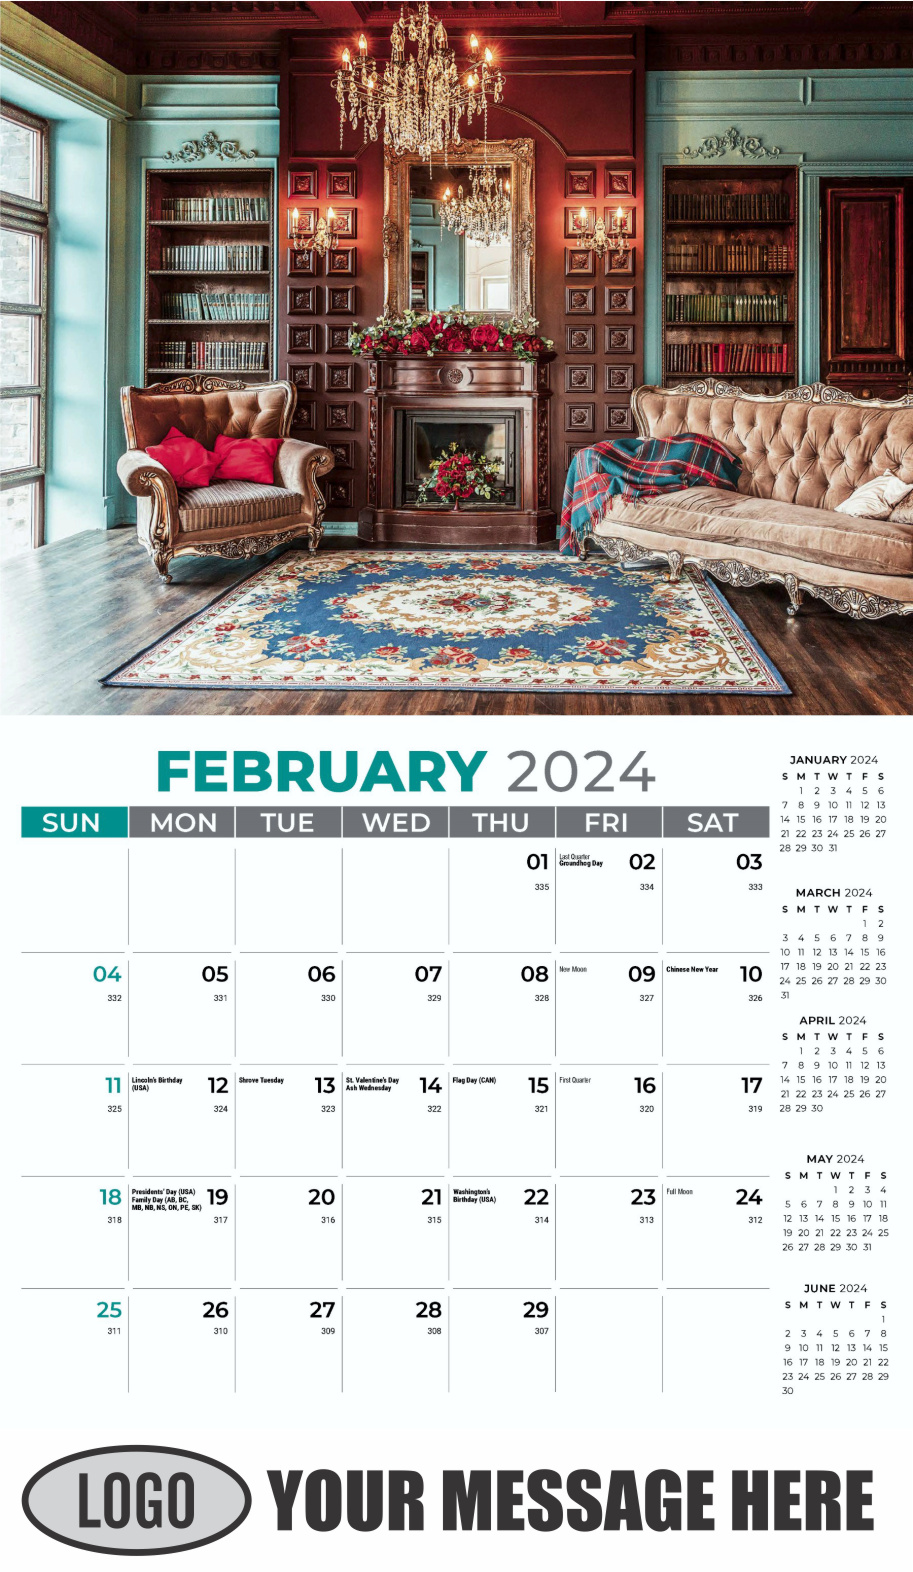 Decor and Design 2024 Interior Design Business Promotional Calendar - February